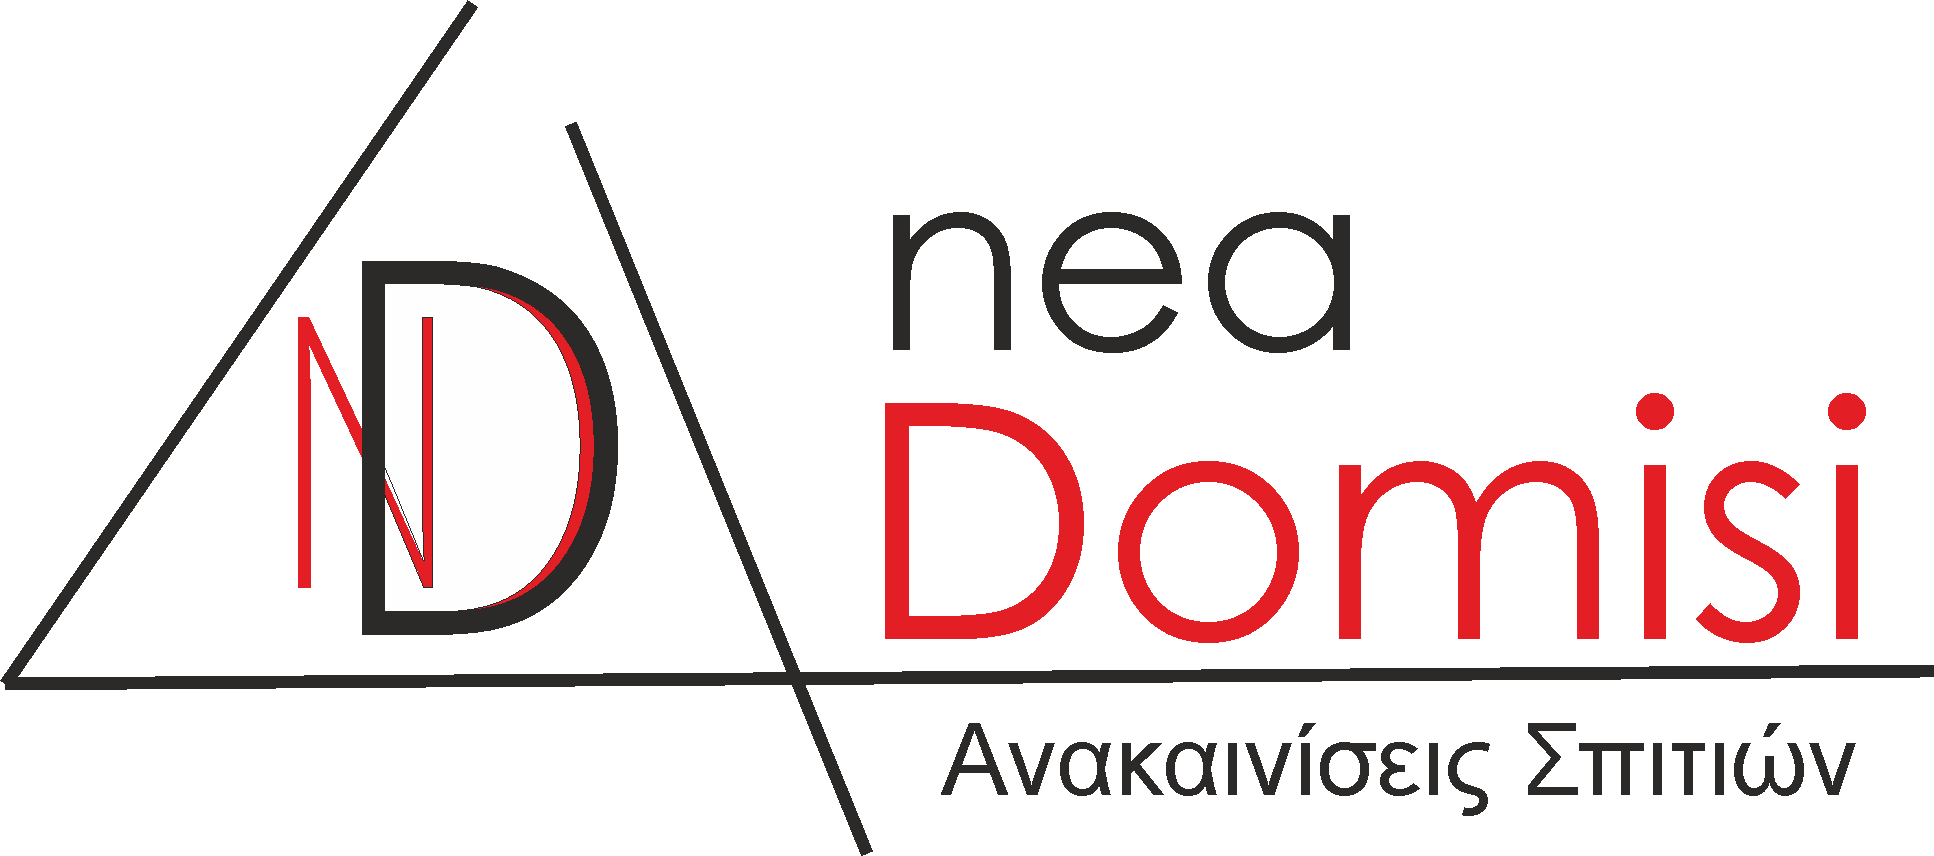 Ανακαίνιση Σπιτιού Θεσσαλονίκη | Nea domisi